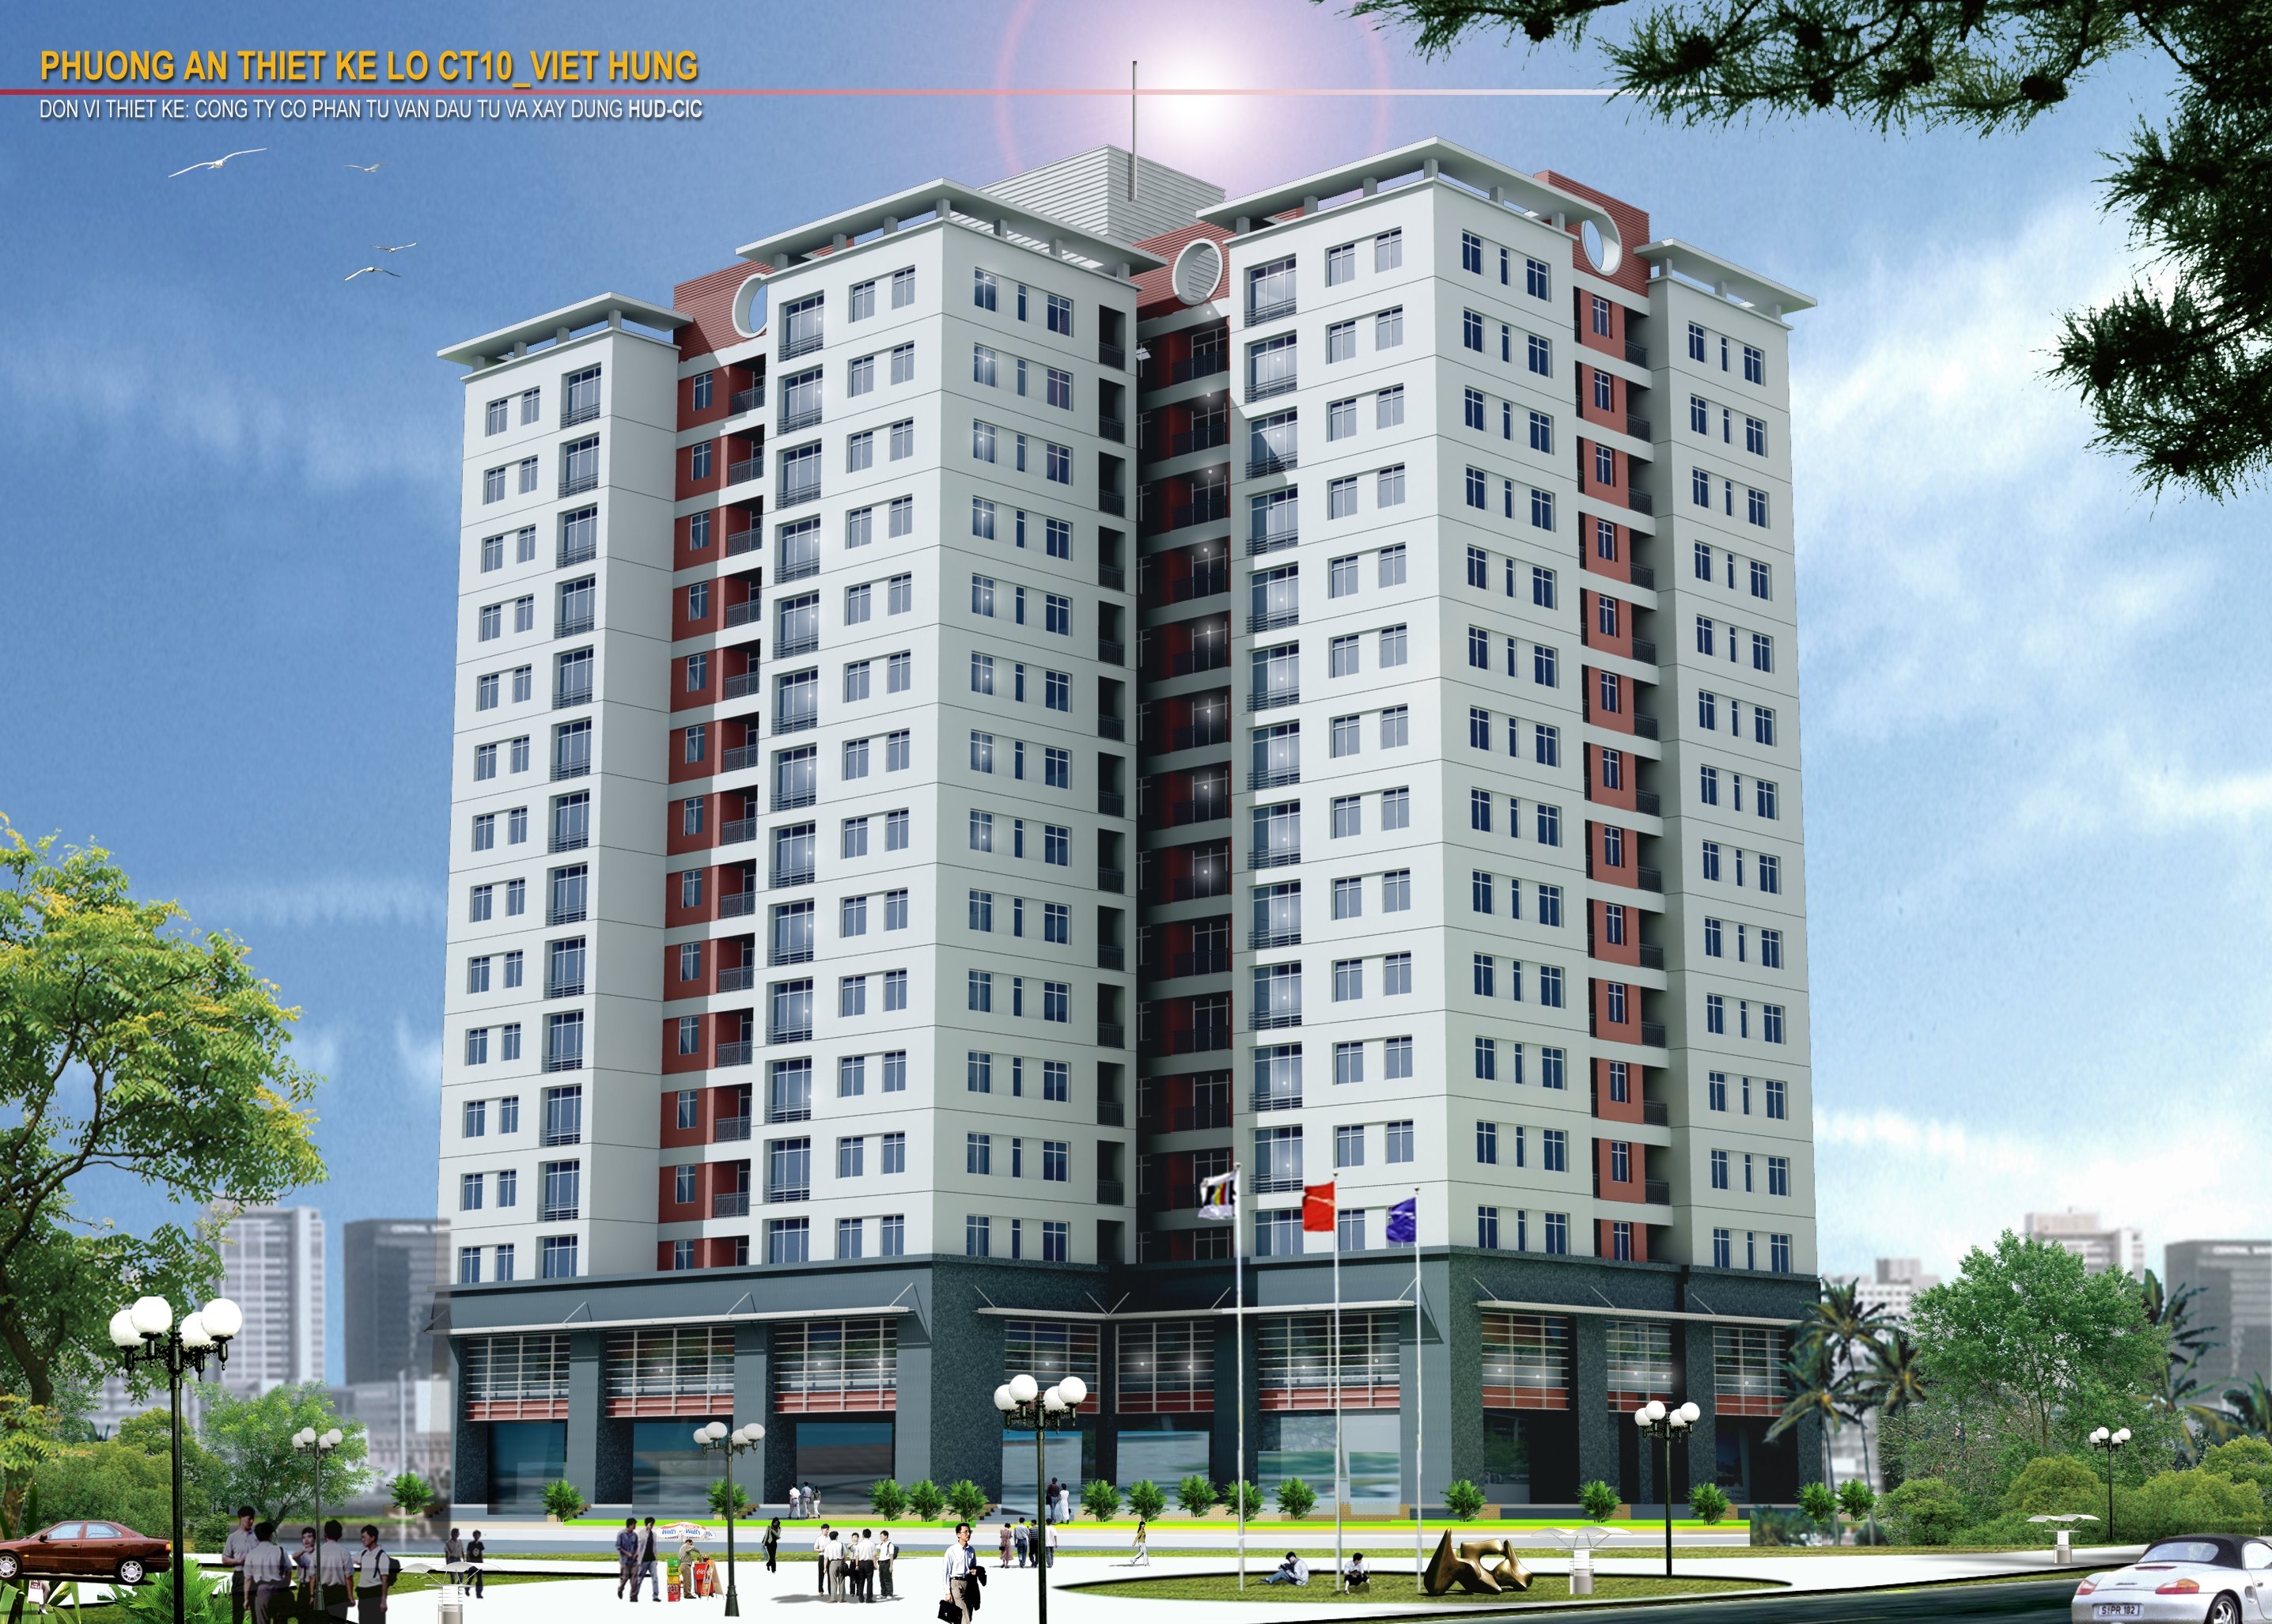 Dự án: Chung cư cao tầng CT10 Khu đô thị mới Việt Hưng